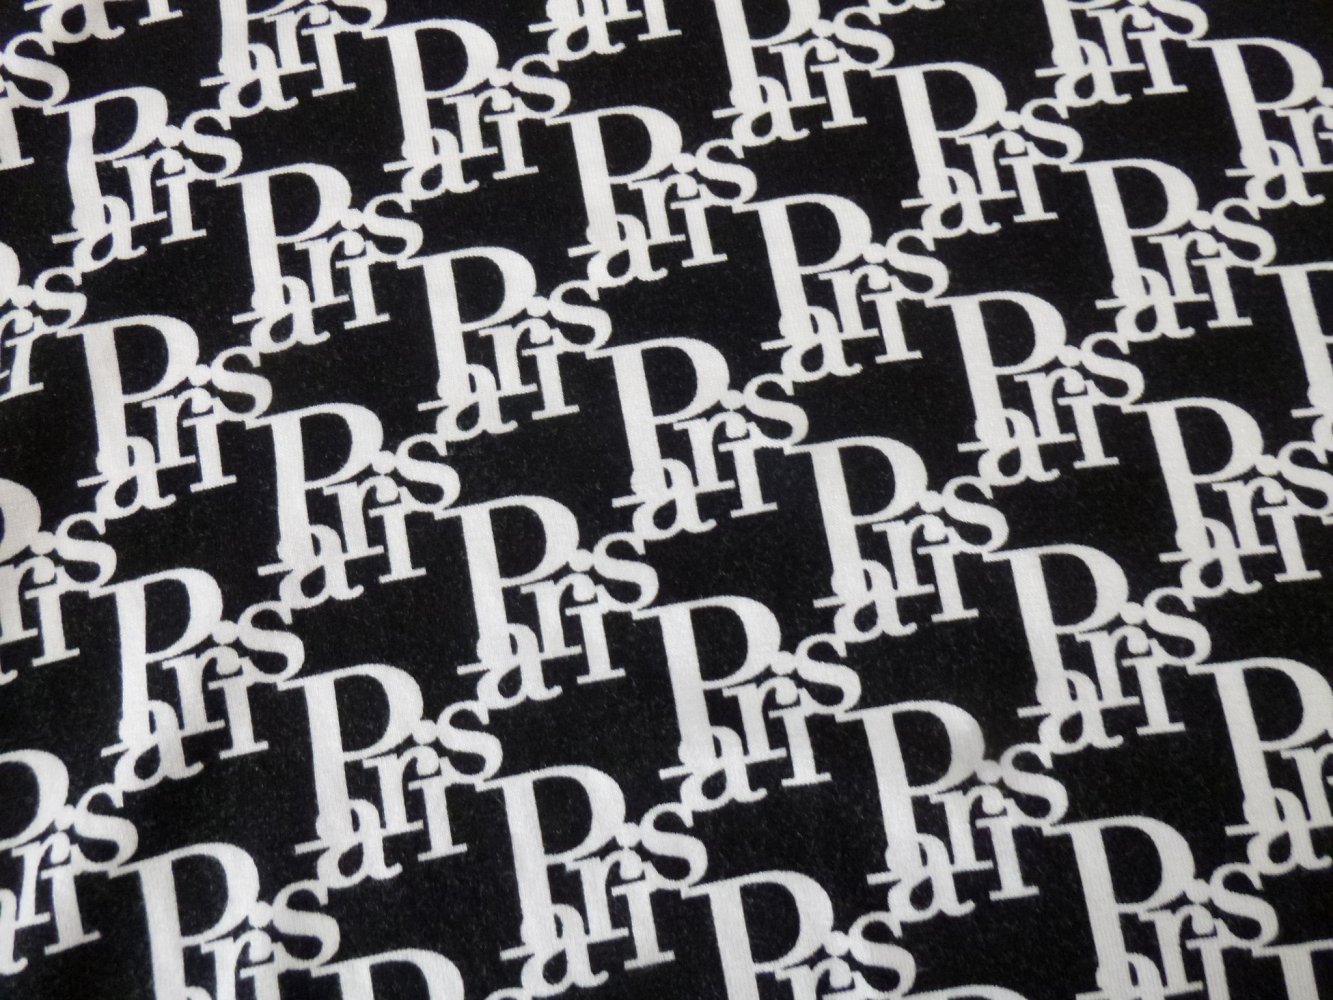  Amisu Kurzarm Shirt Gr. XL Aufdruck Paris schwarz-weiß